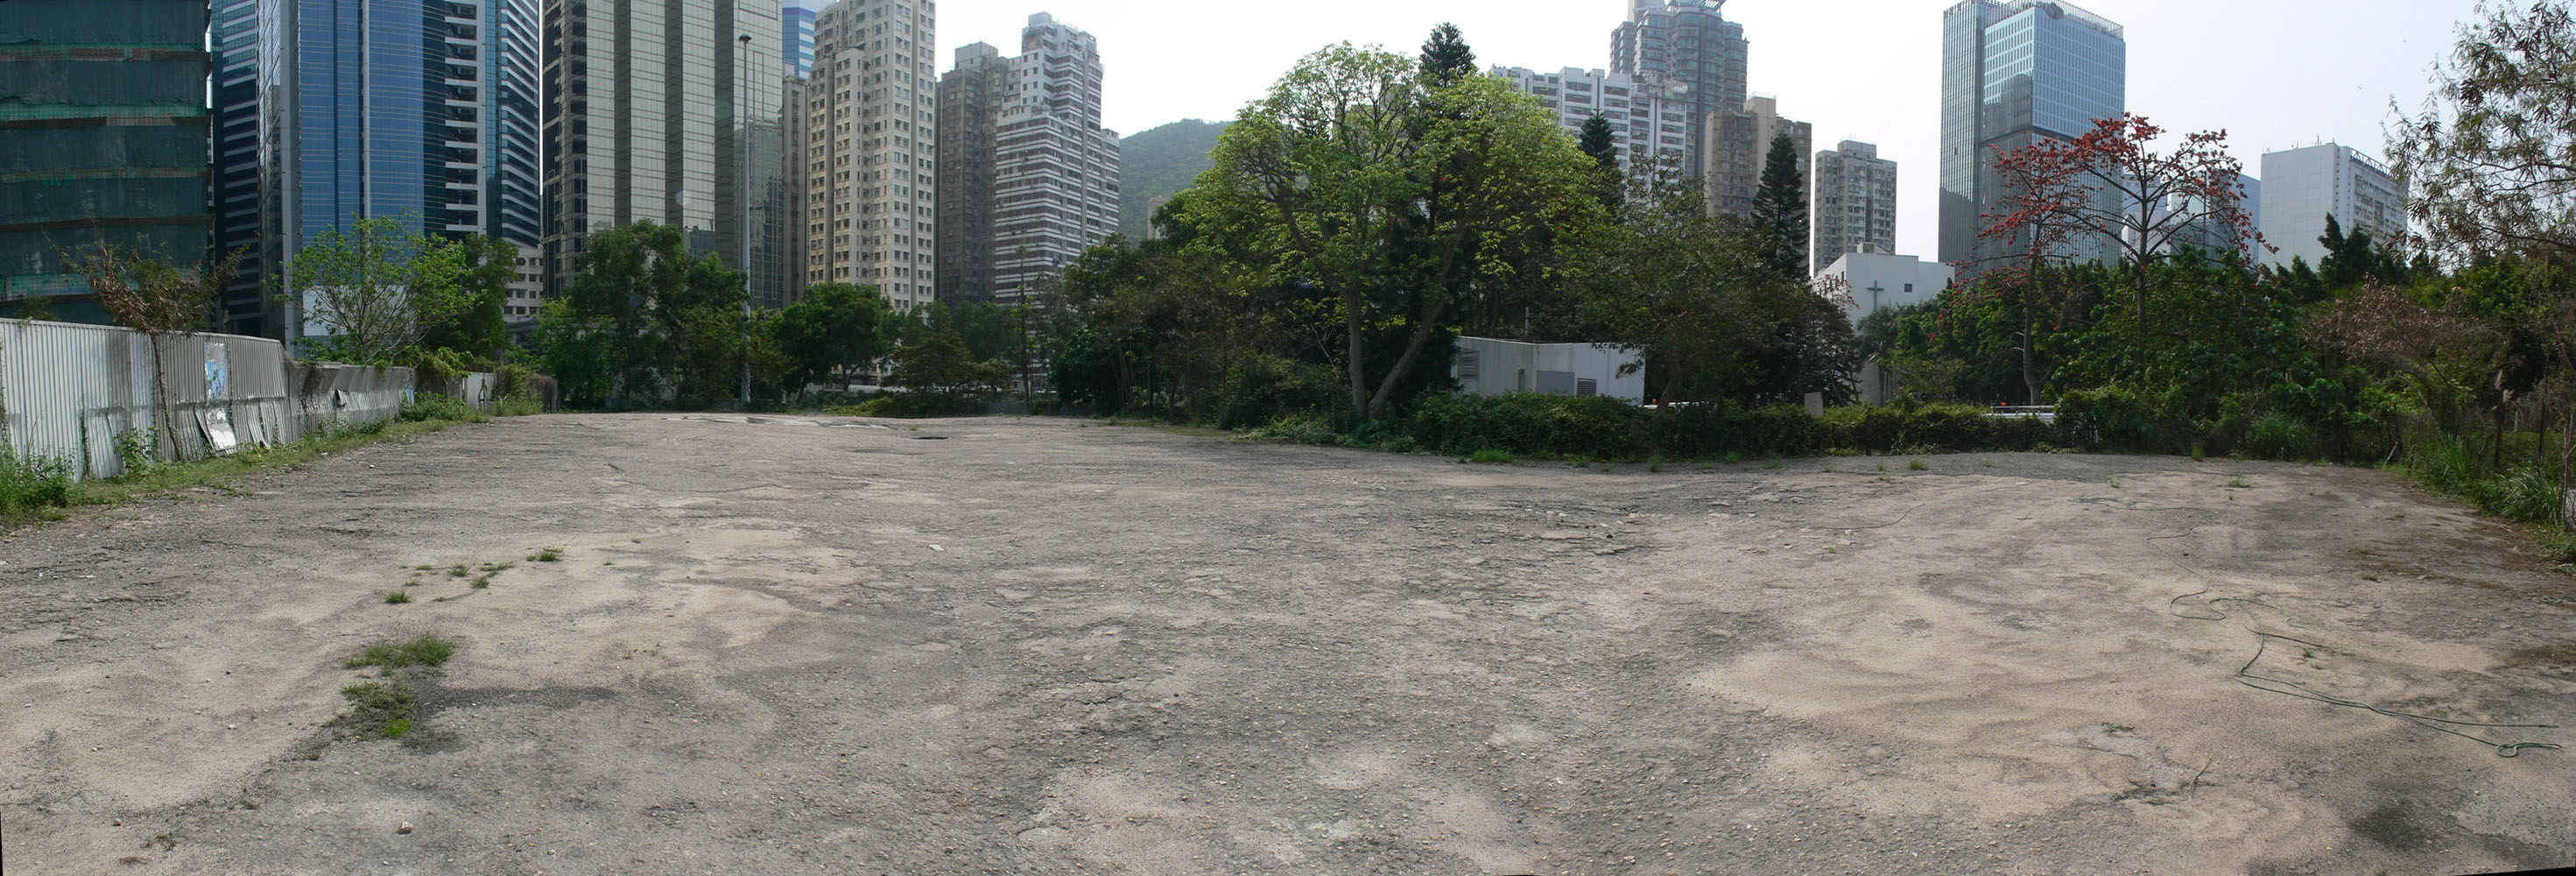 相片 3: 海堤街政府土地